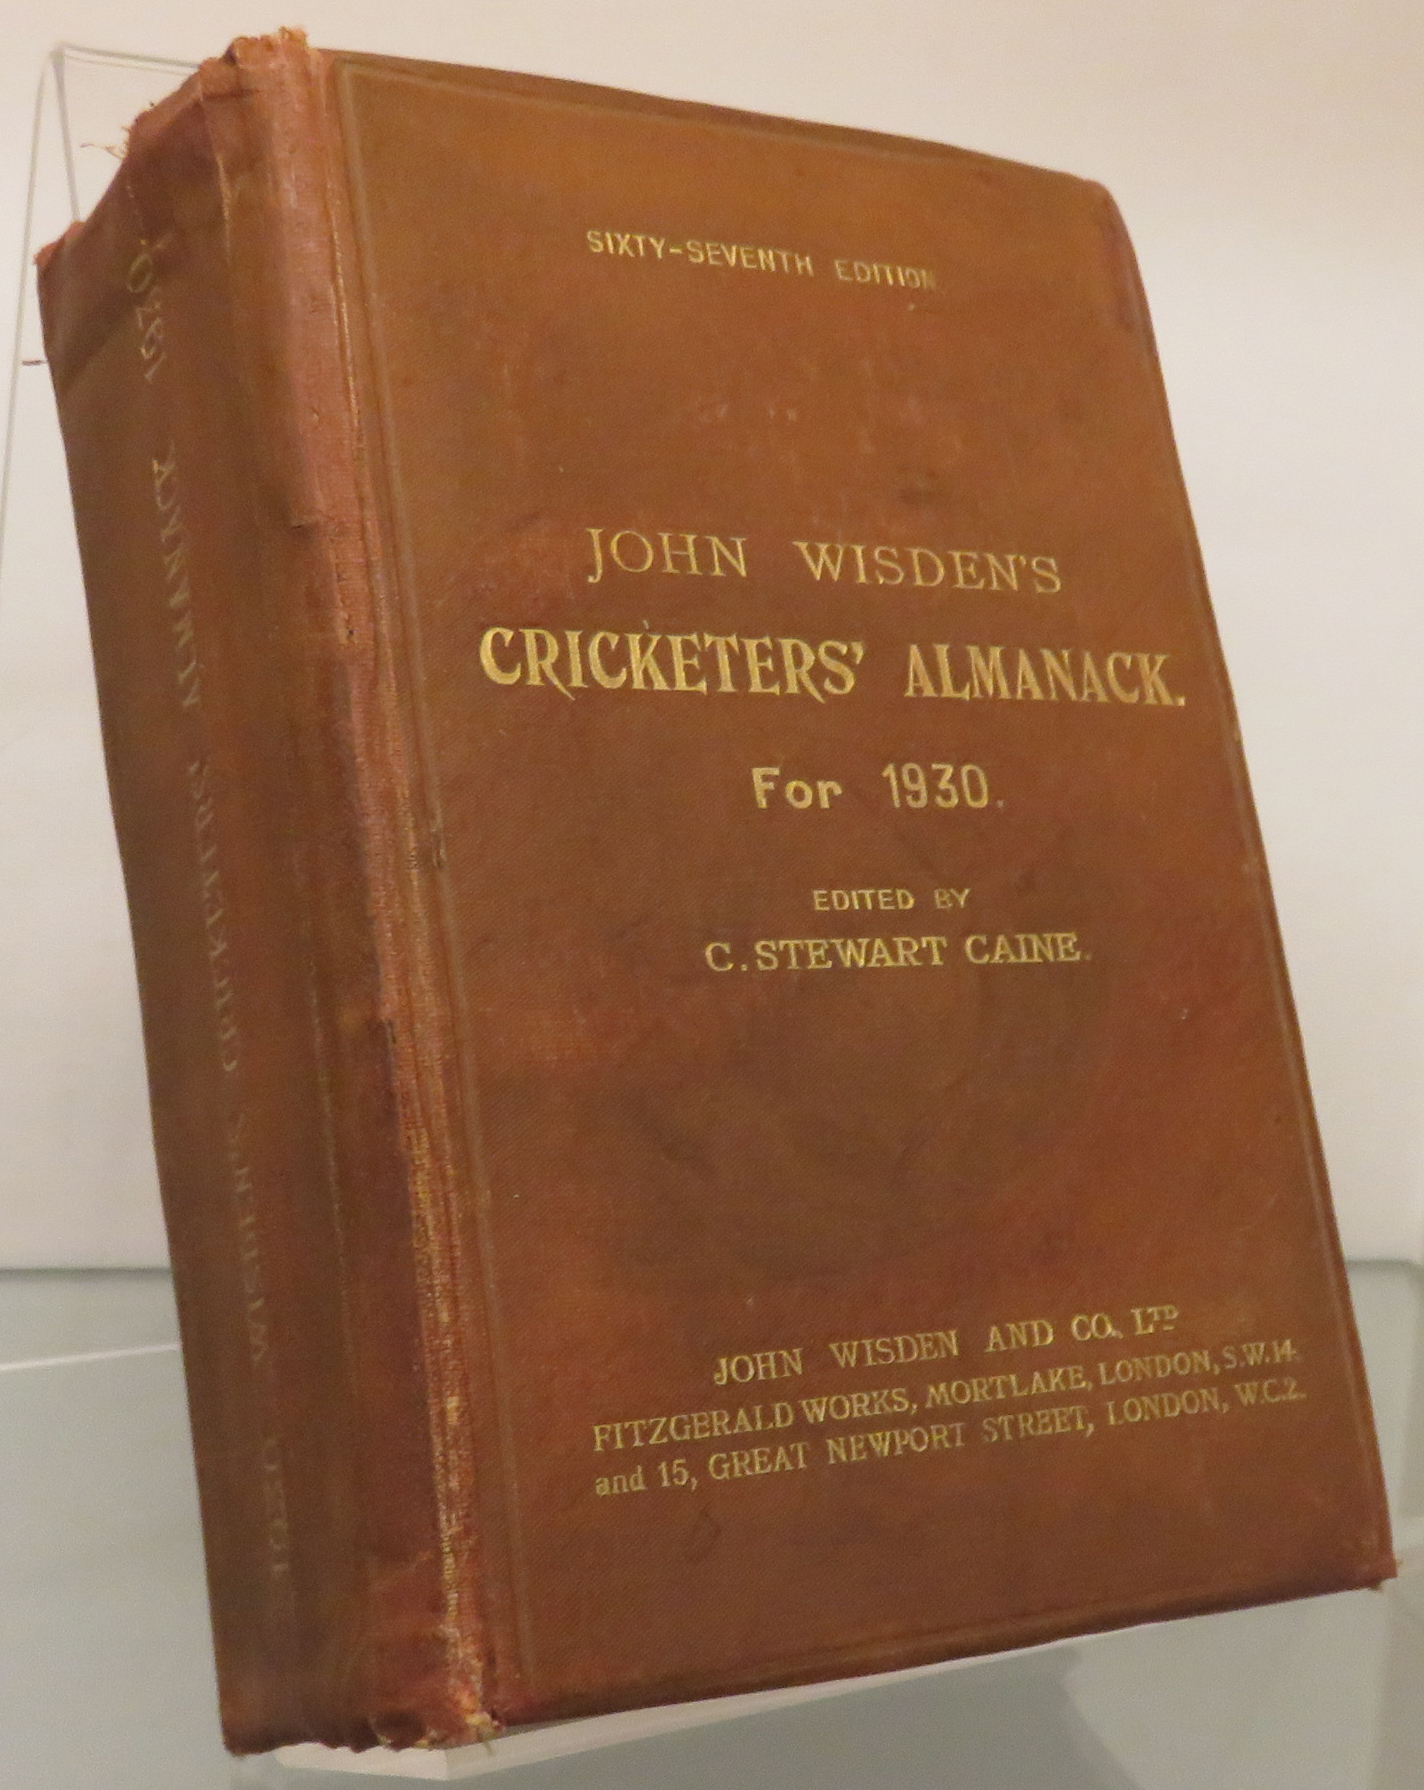 John Wisden's Cricketers' Almanack for 1930